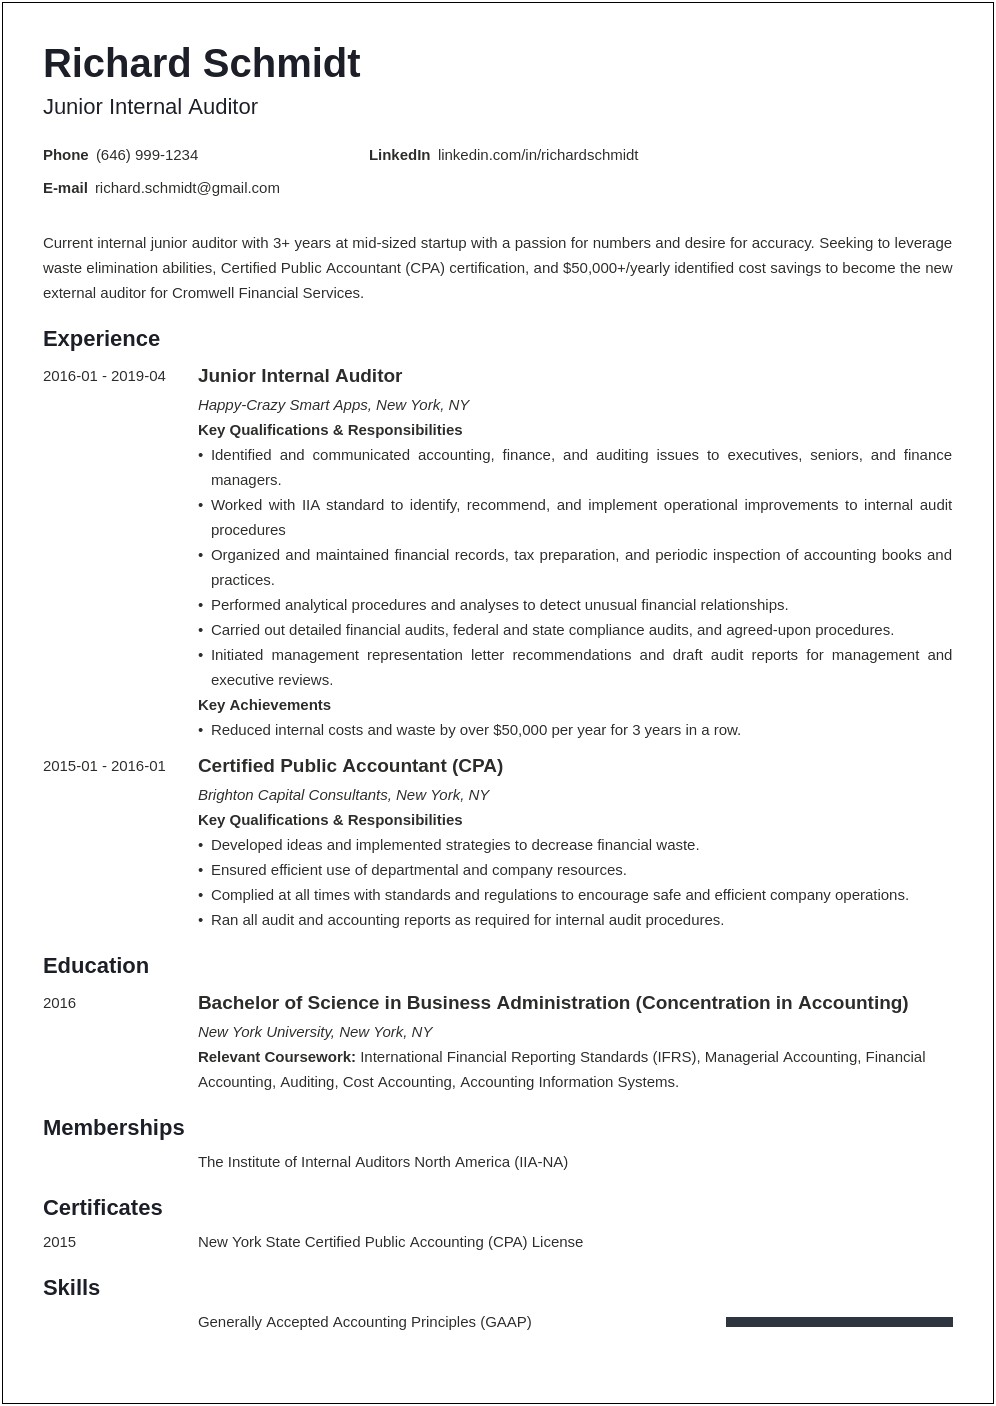 Resume Objective For Senior Auditor